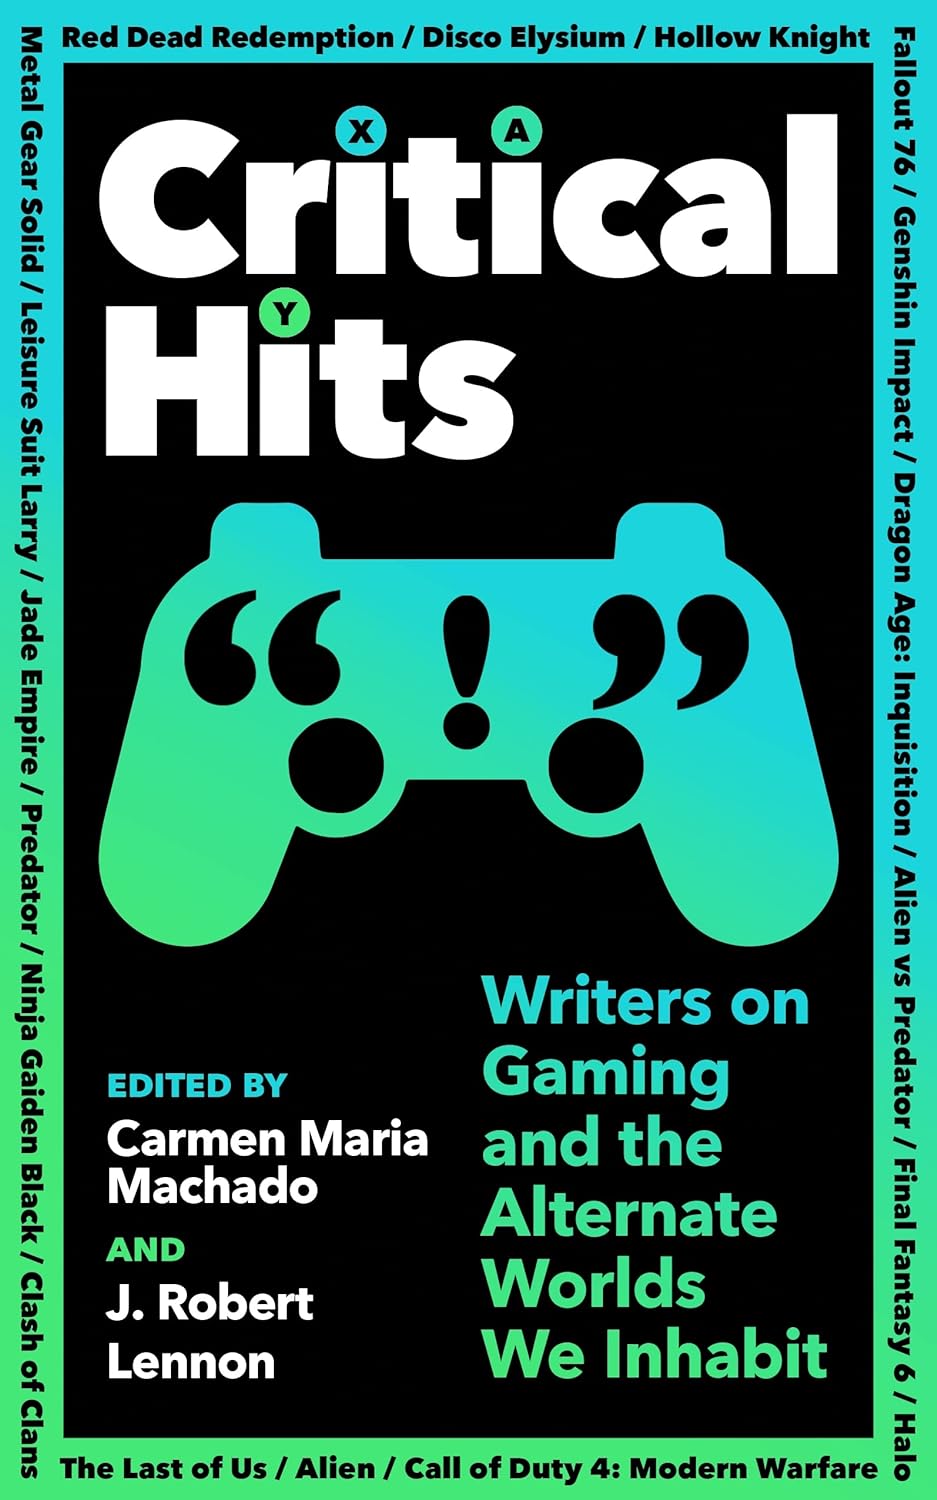 Critical Hits by Carmen Maria Machado (ed.)